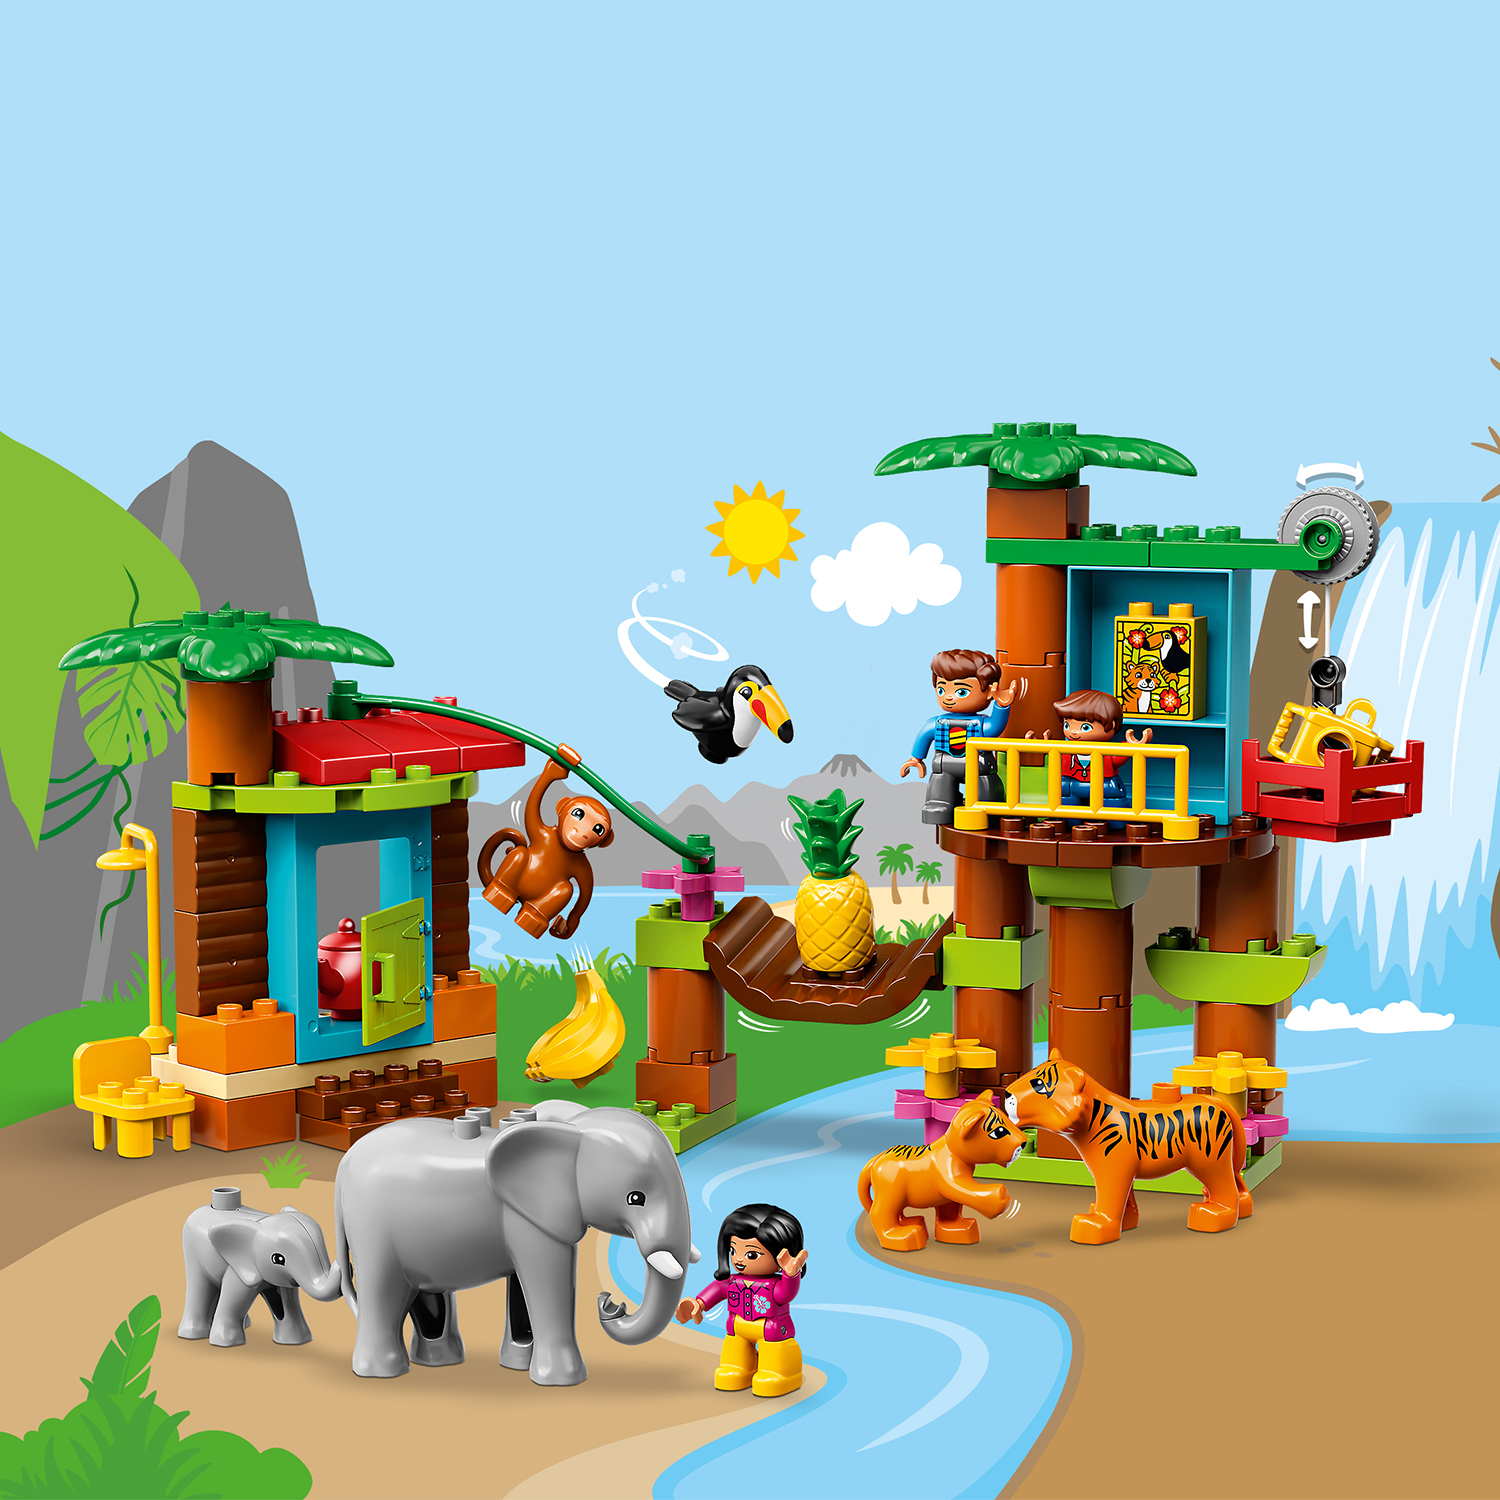 LEGO DUPLO Baumhaus im Dschungel